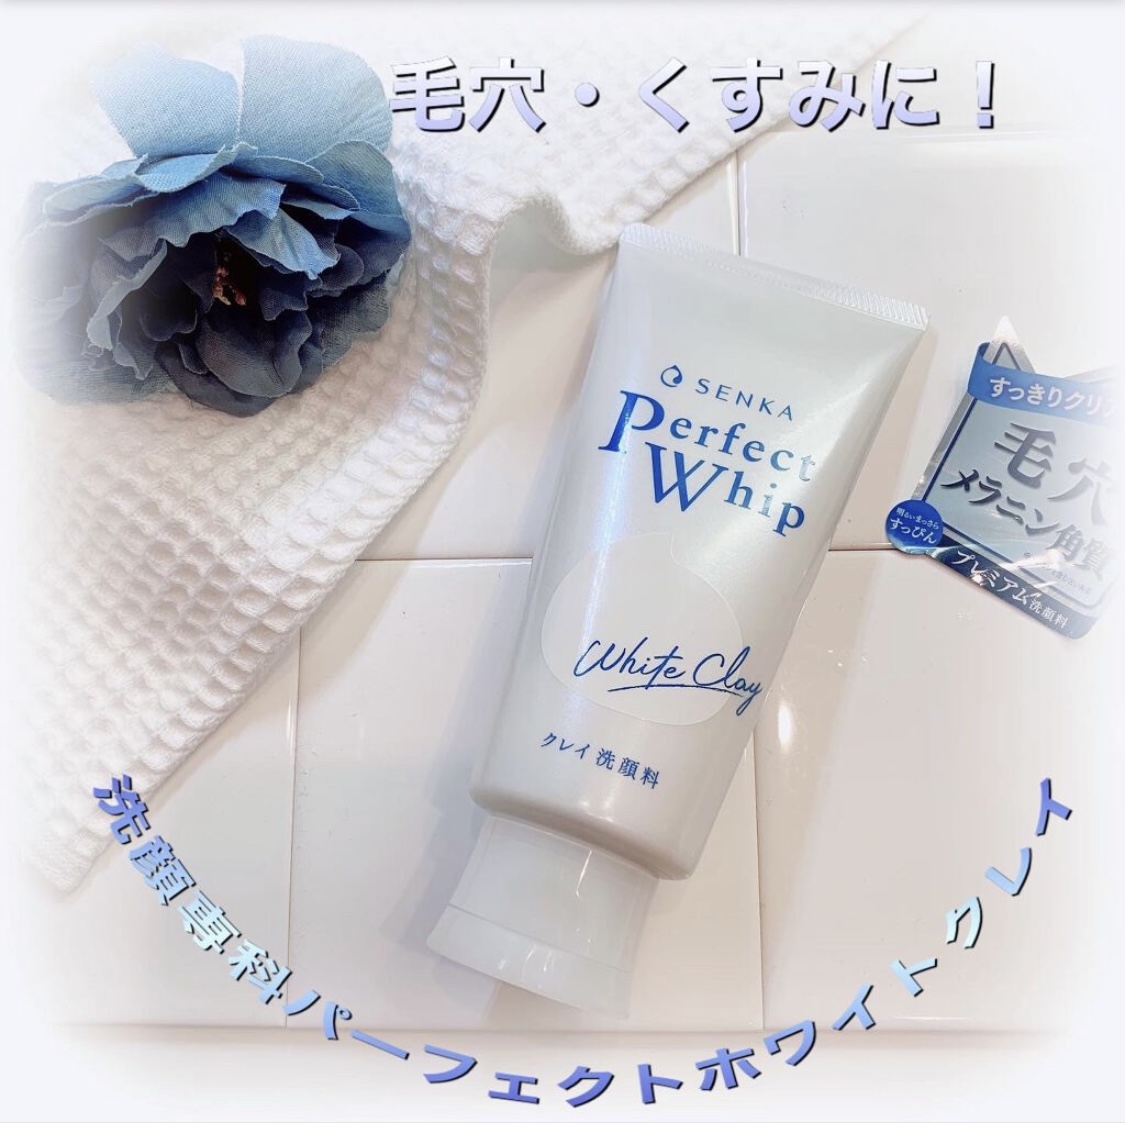 洗顔専科 パーフェクトホワイトクレイを使ったsnowmiさんのクチコミ画像1